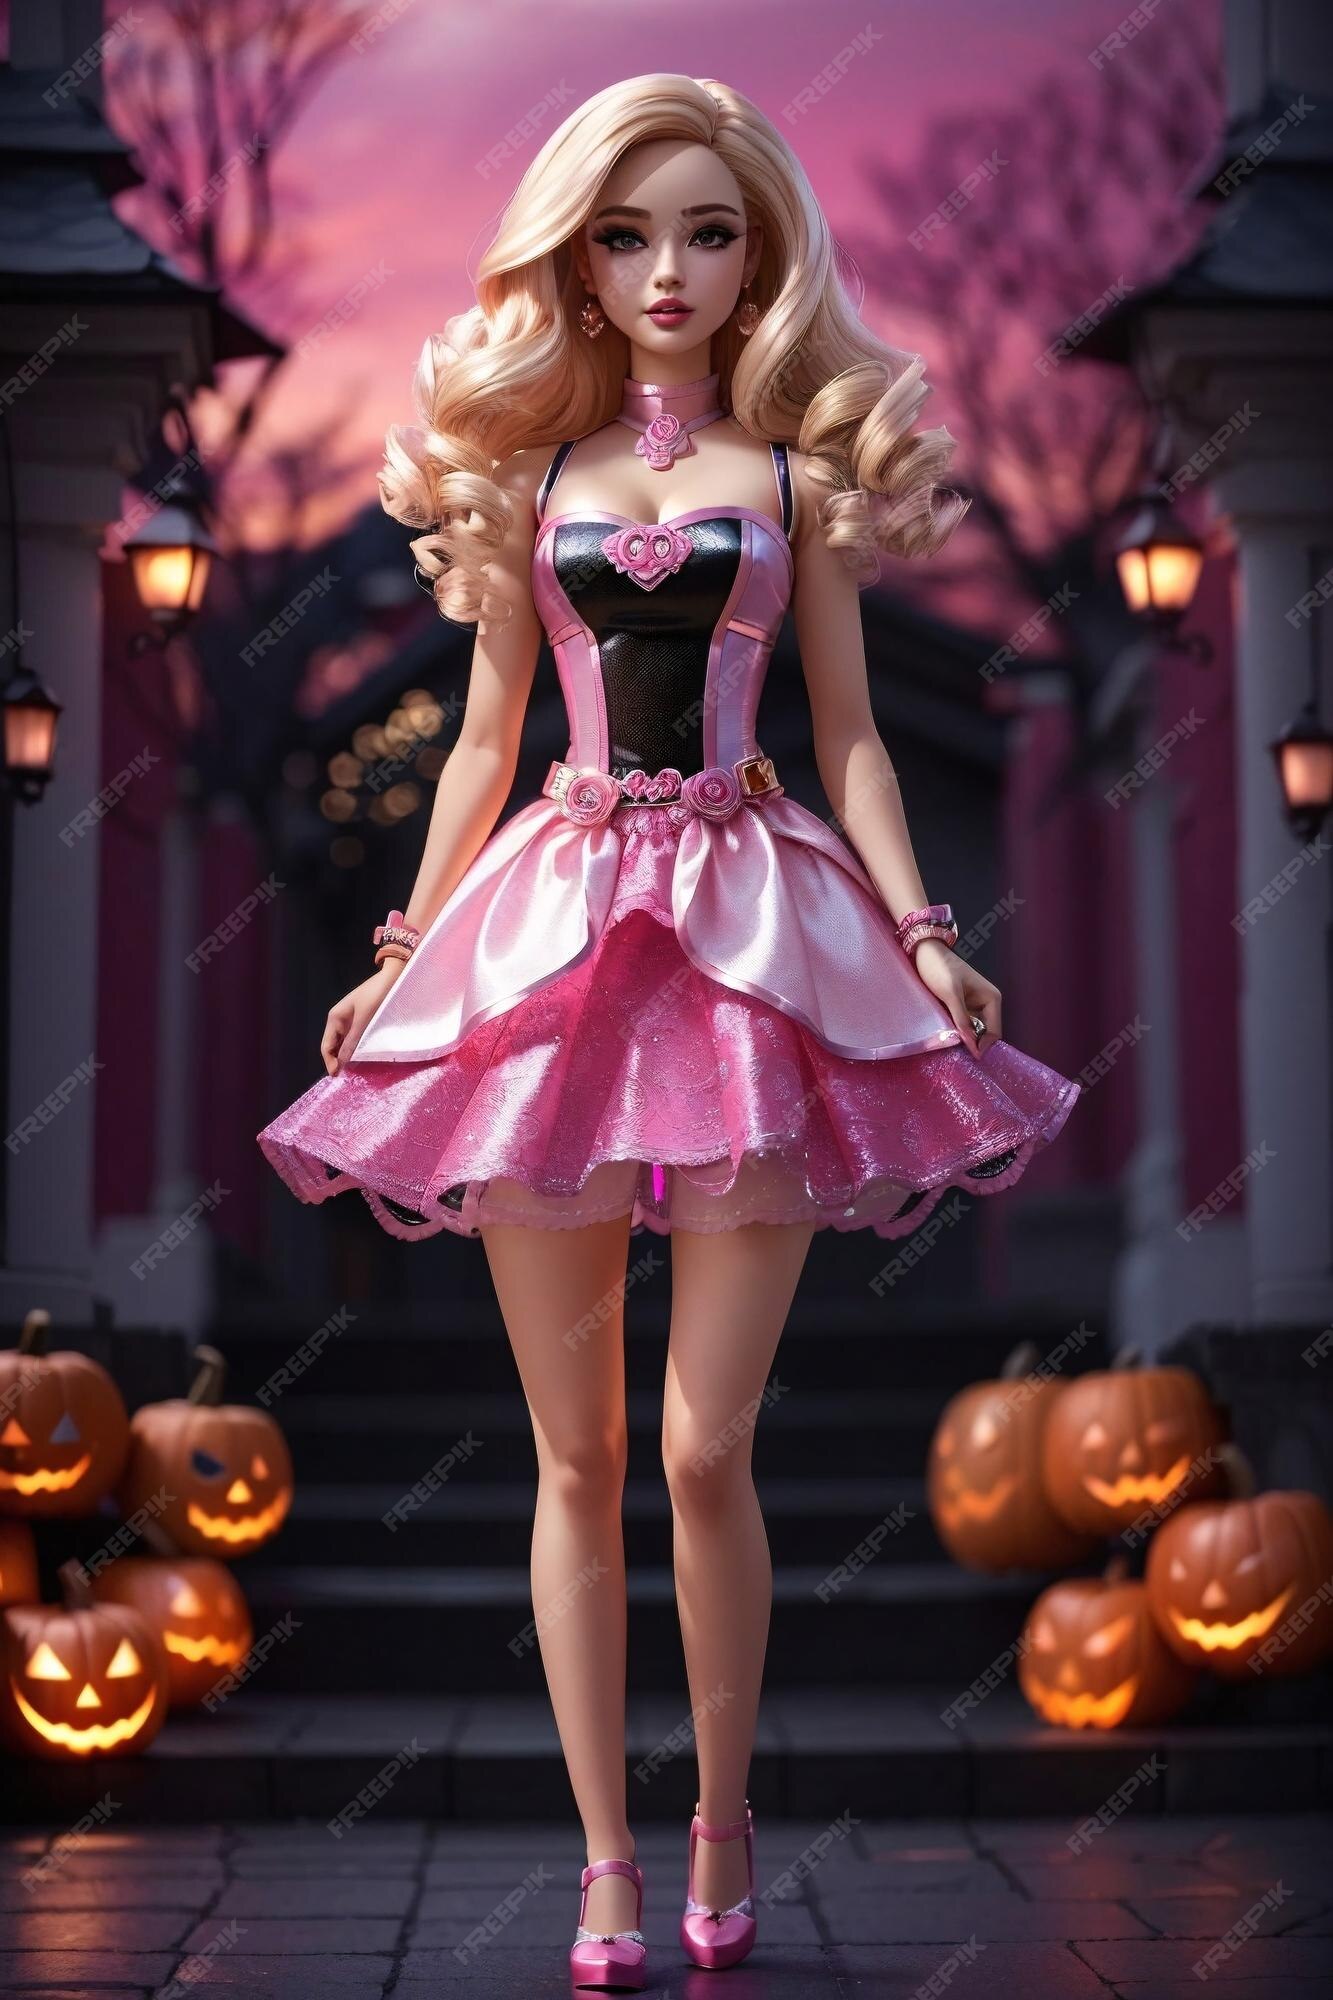 Barbie con un increíble disfraz de mujer de halloween